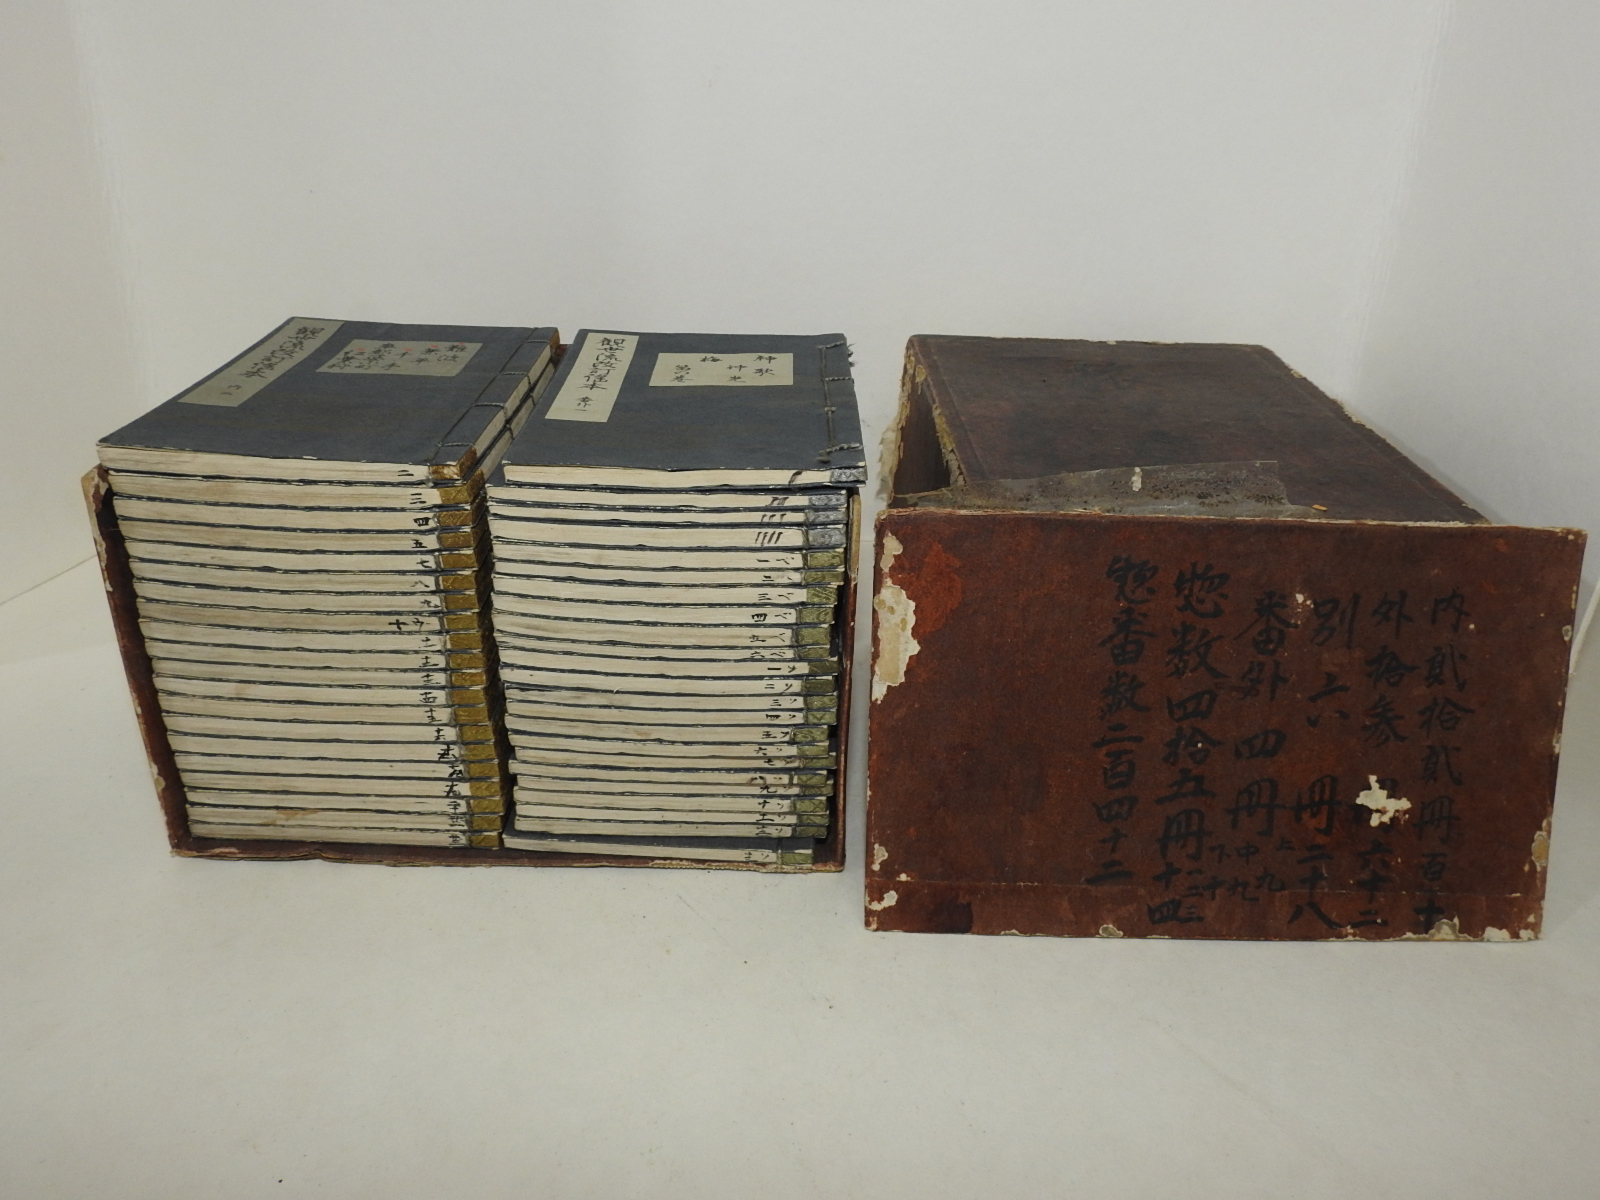 1918년(대정7년) 일본간행 관세류개정요본(觀世流改訂謠本) 43책